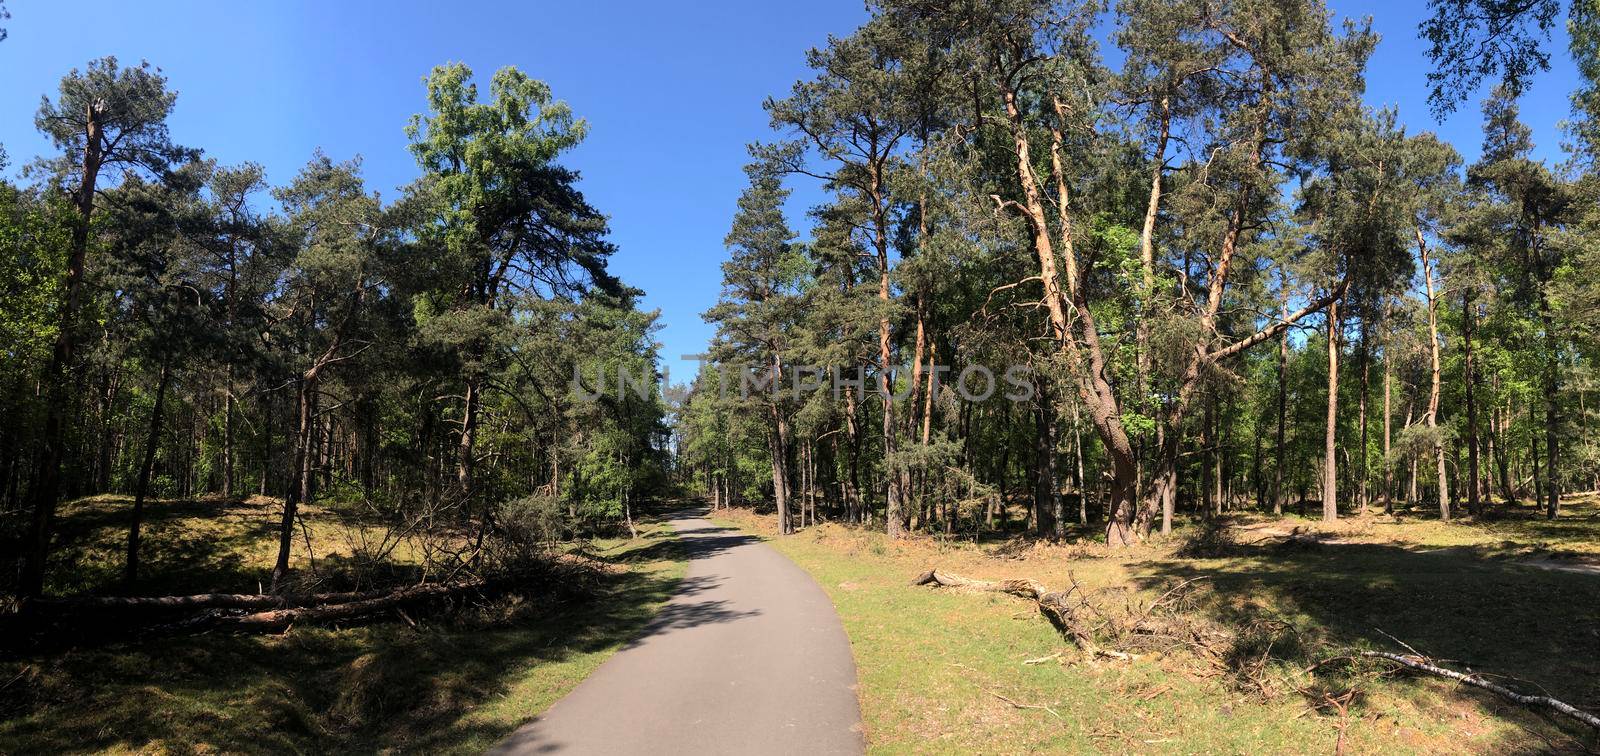 Path through National Park De Hoge Veluwe in Gelderland, The Netherlands